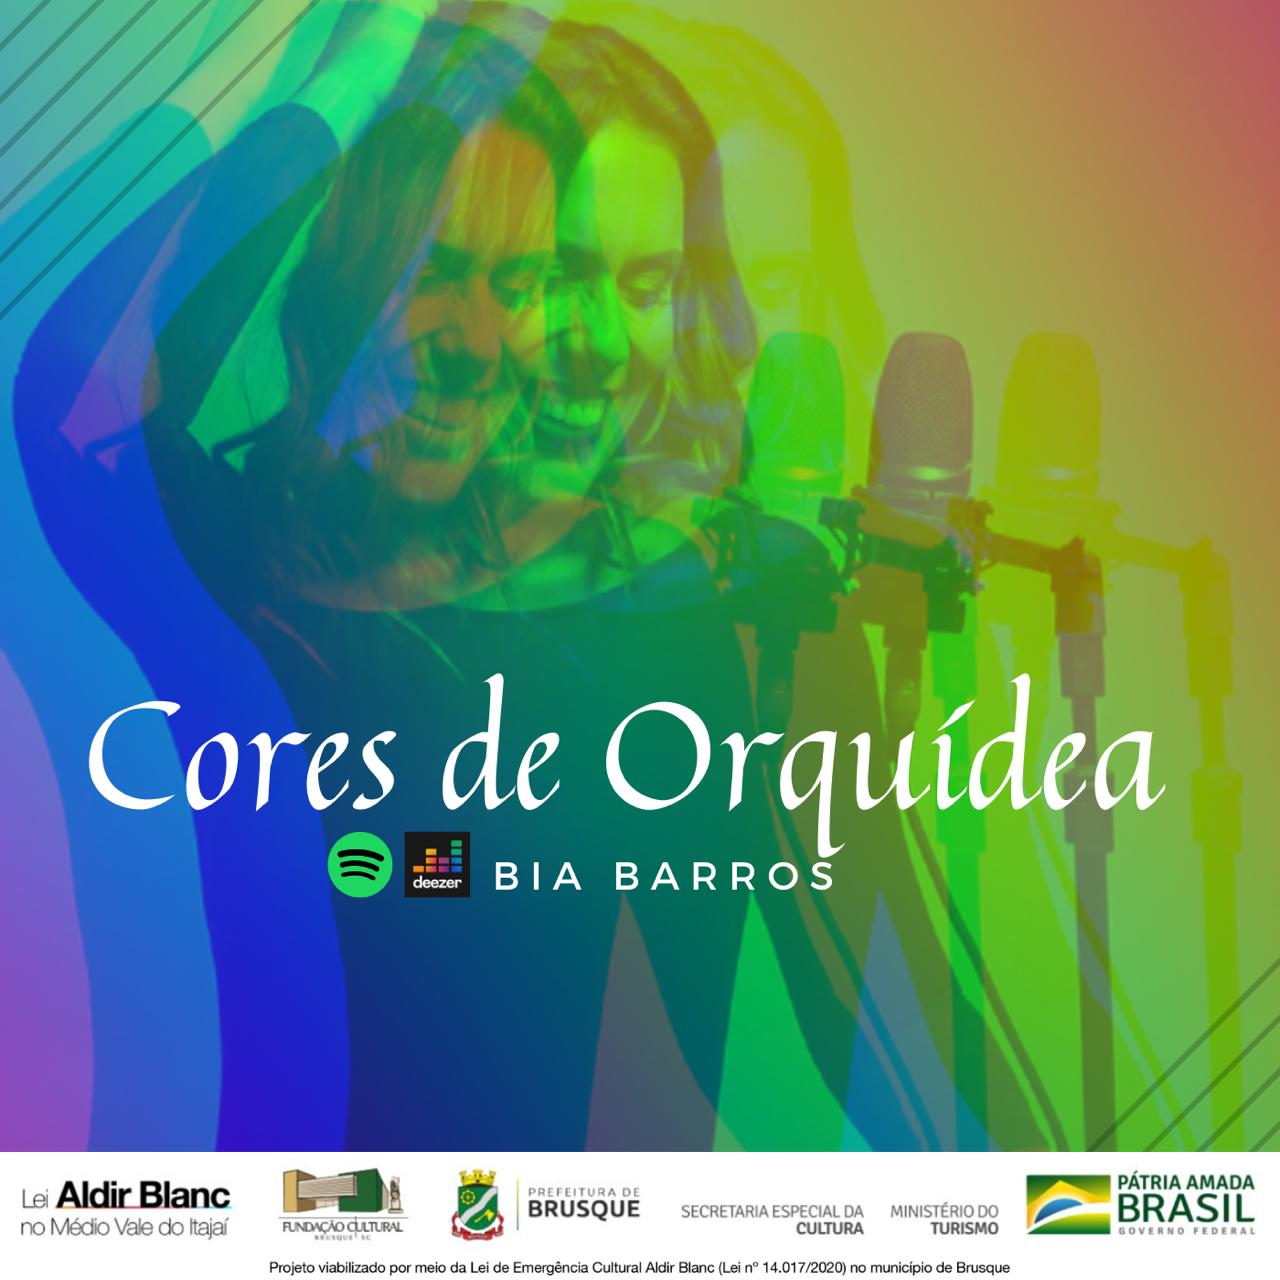 Lei Aldir Blanc: Bia Barros lança músicas autorais